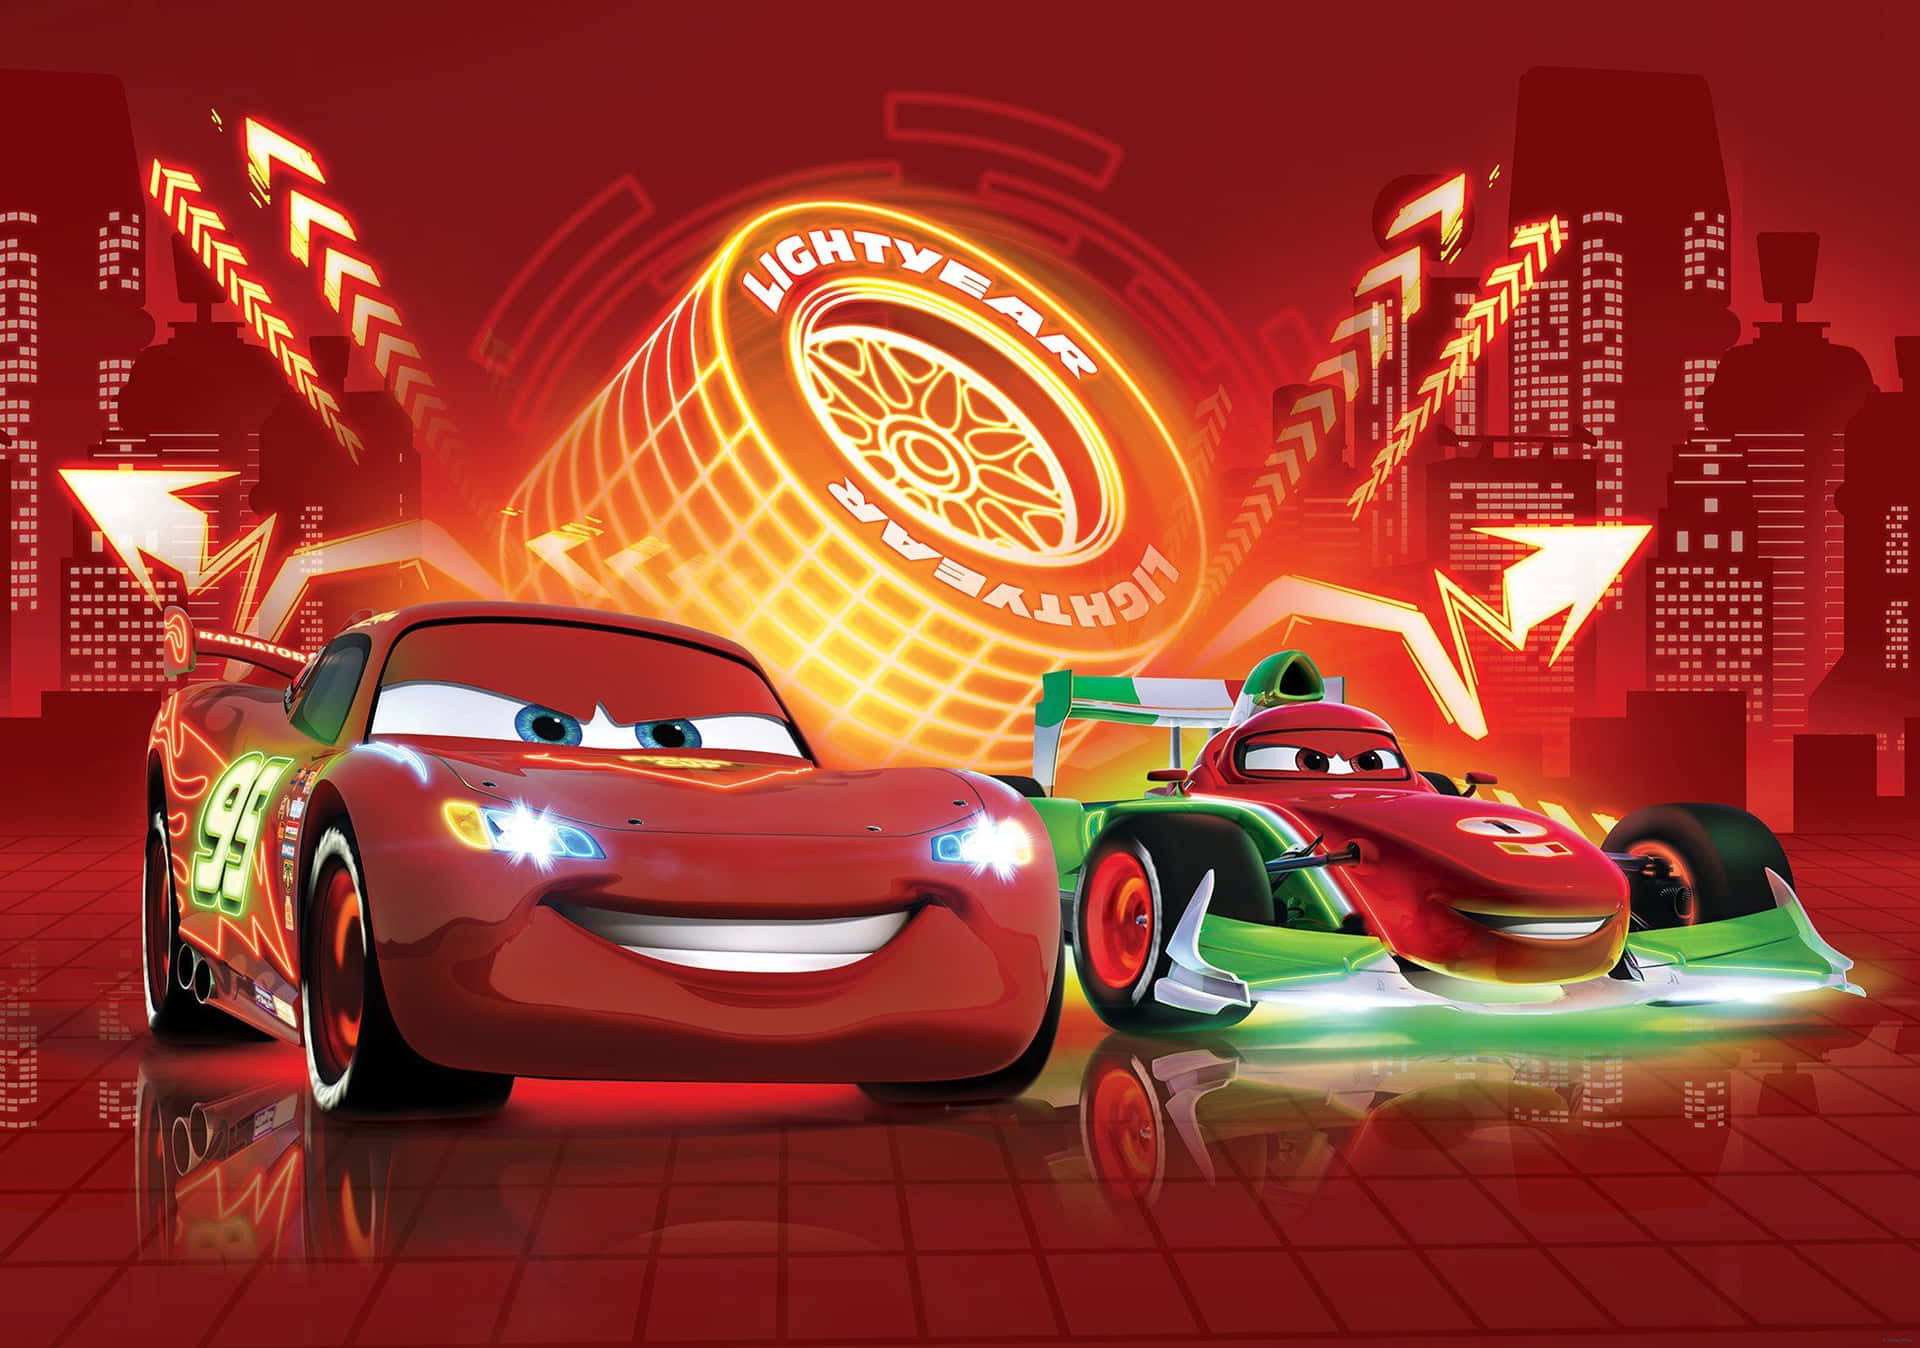 Disney Cars - Lightning Mcqueen